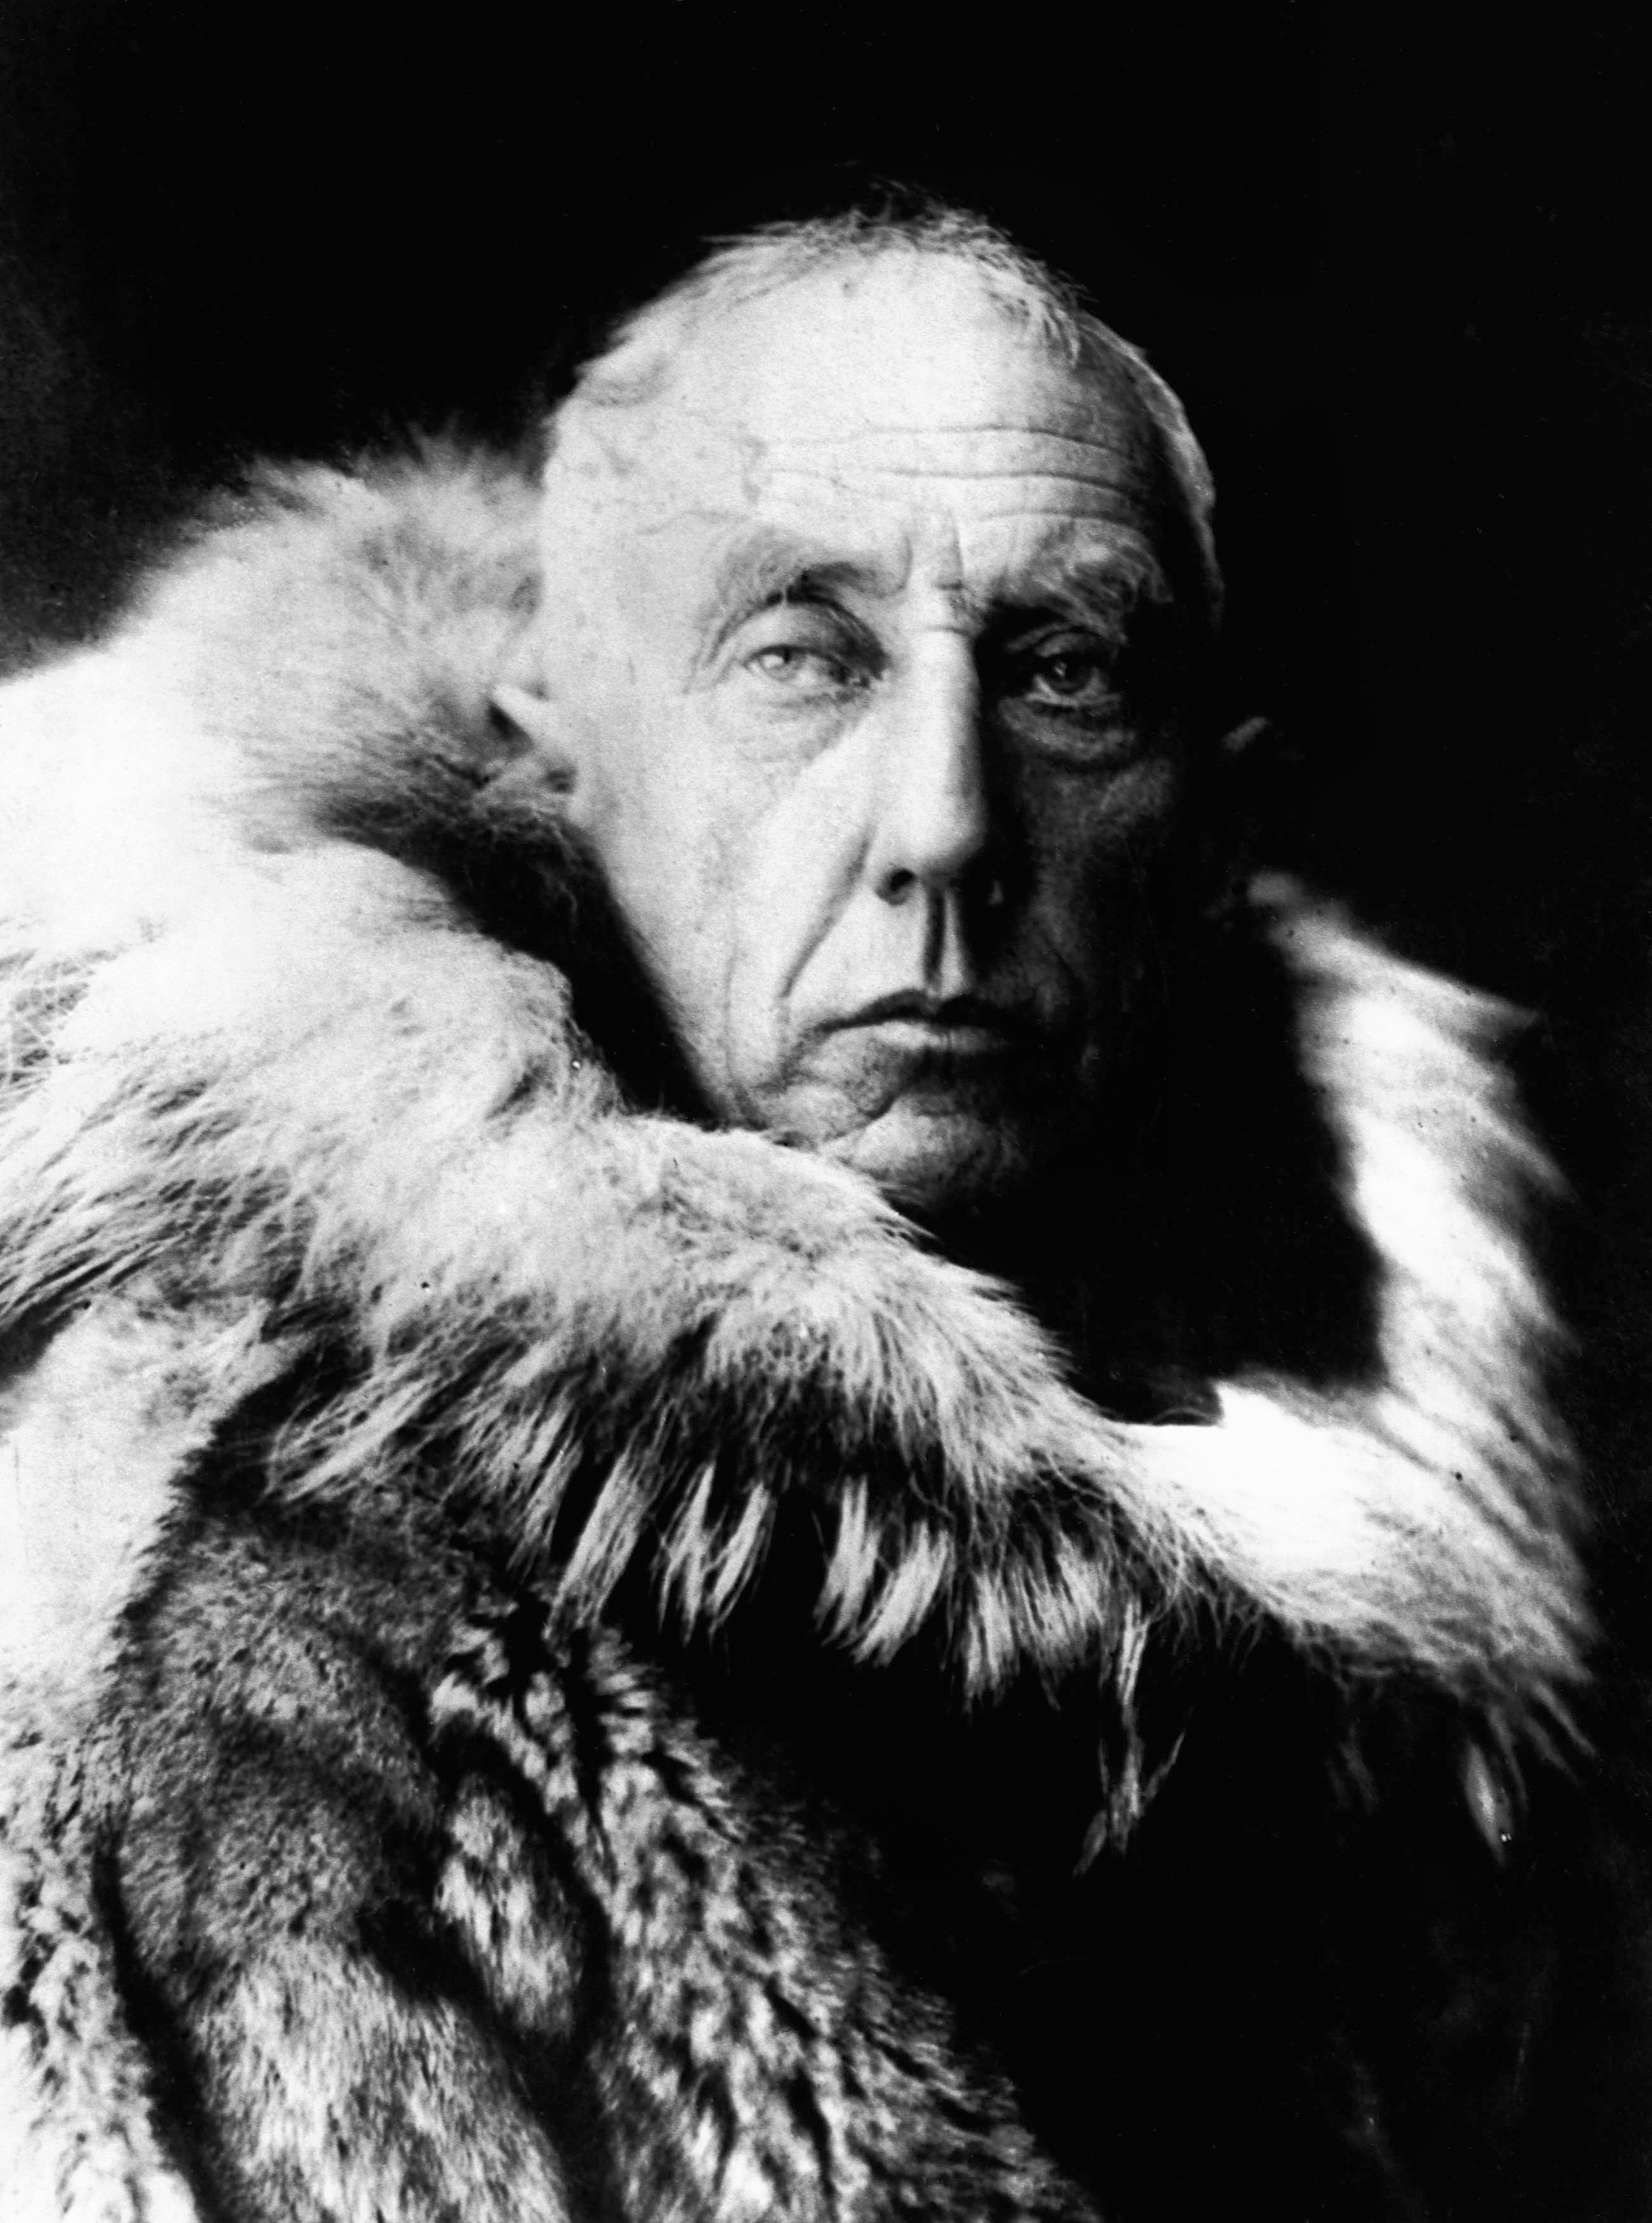  Biografía de Roald Amundsen